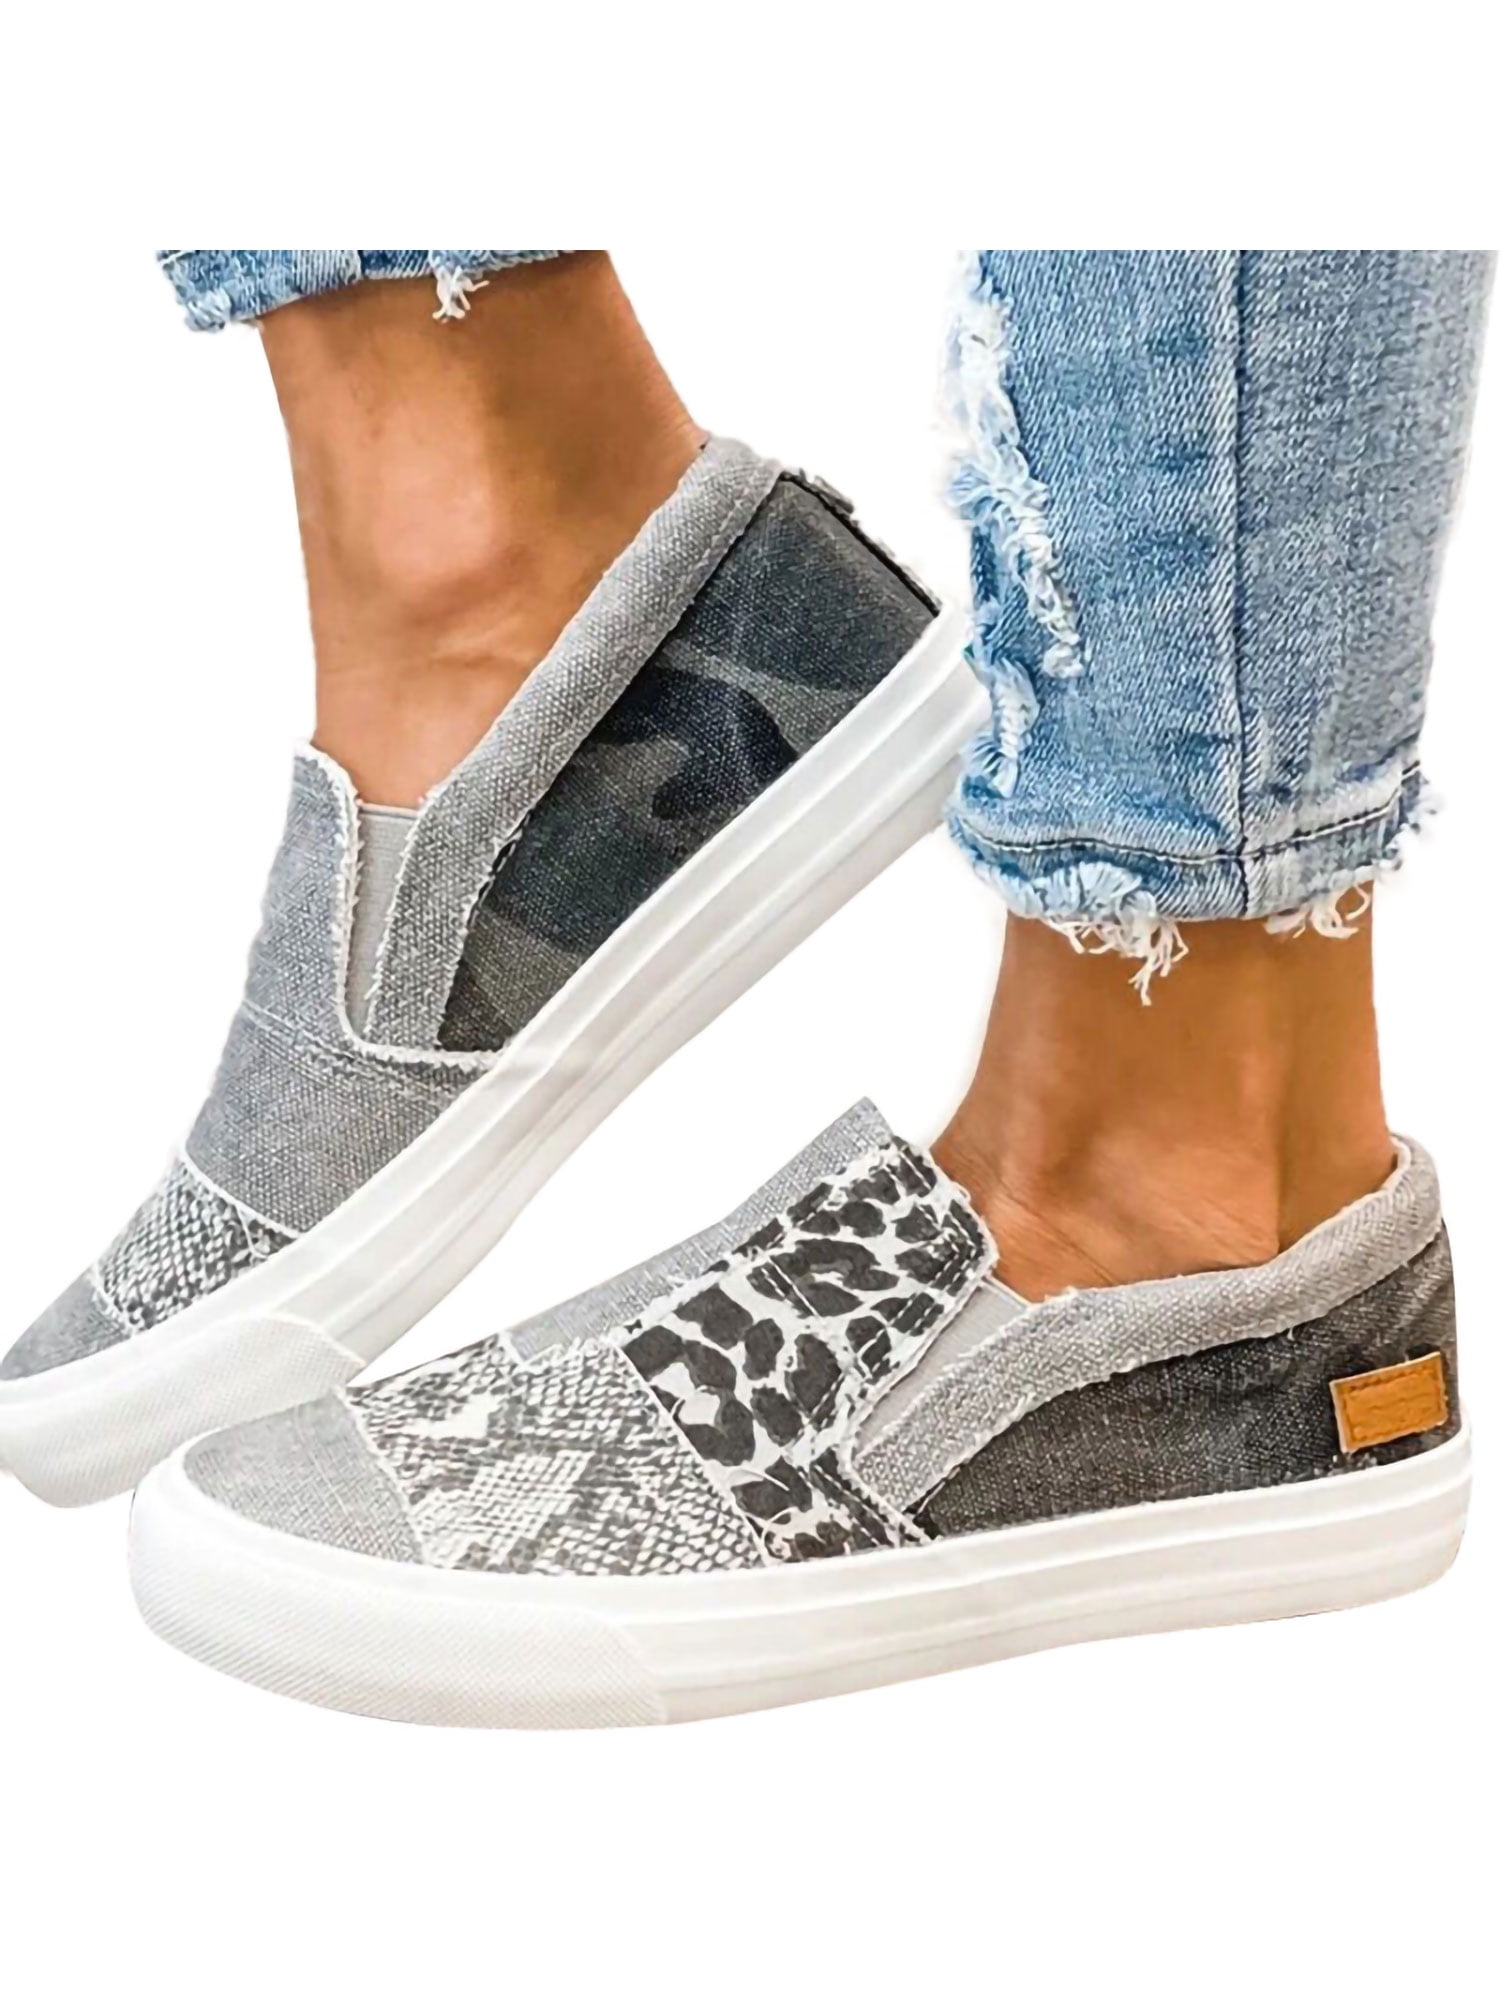 Women  Hidden Heel Canvas comfort Loafers Sneakers Plimsolls Shoes Platform Chic